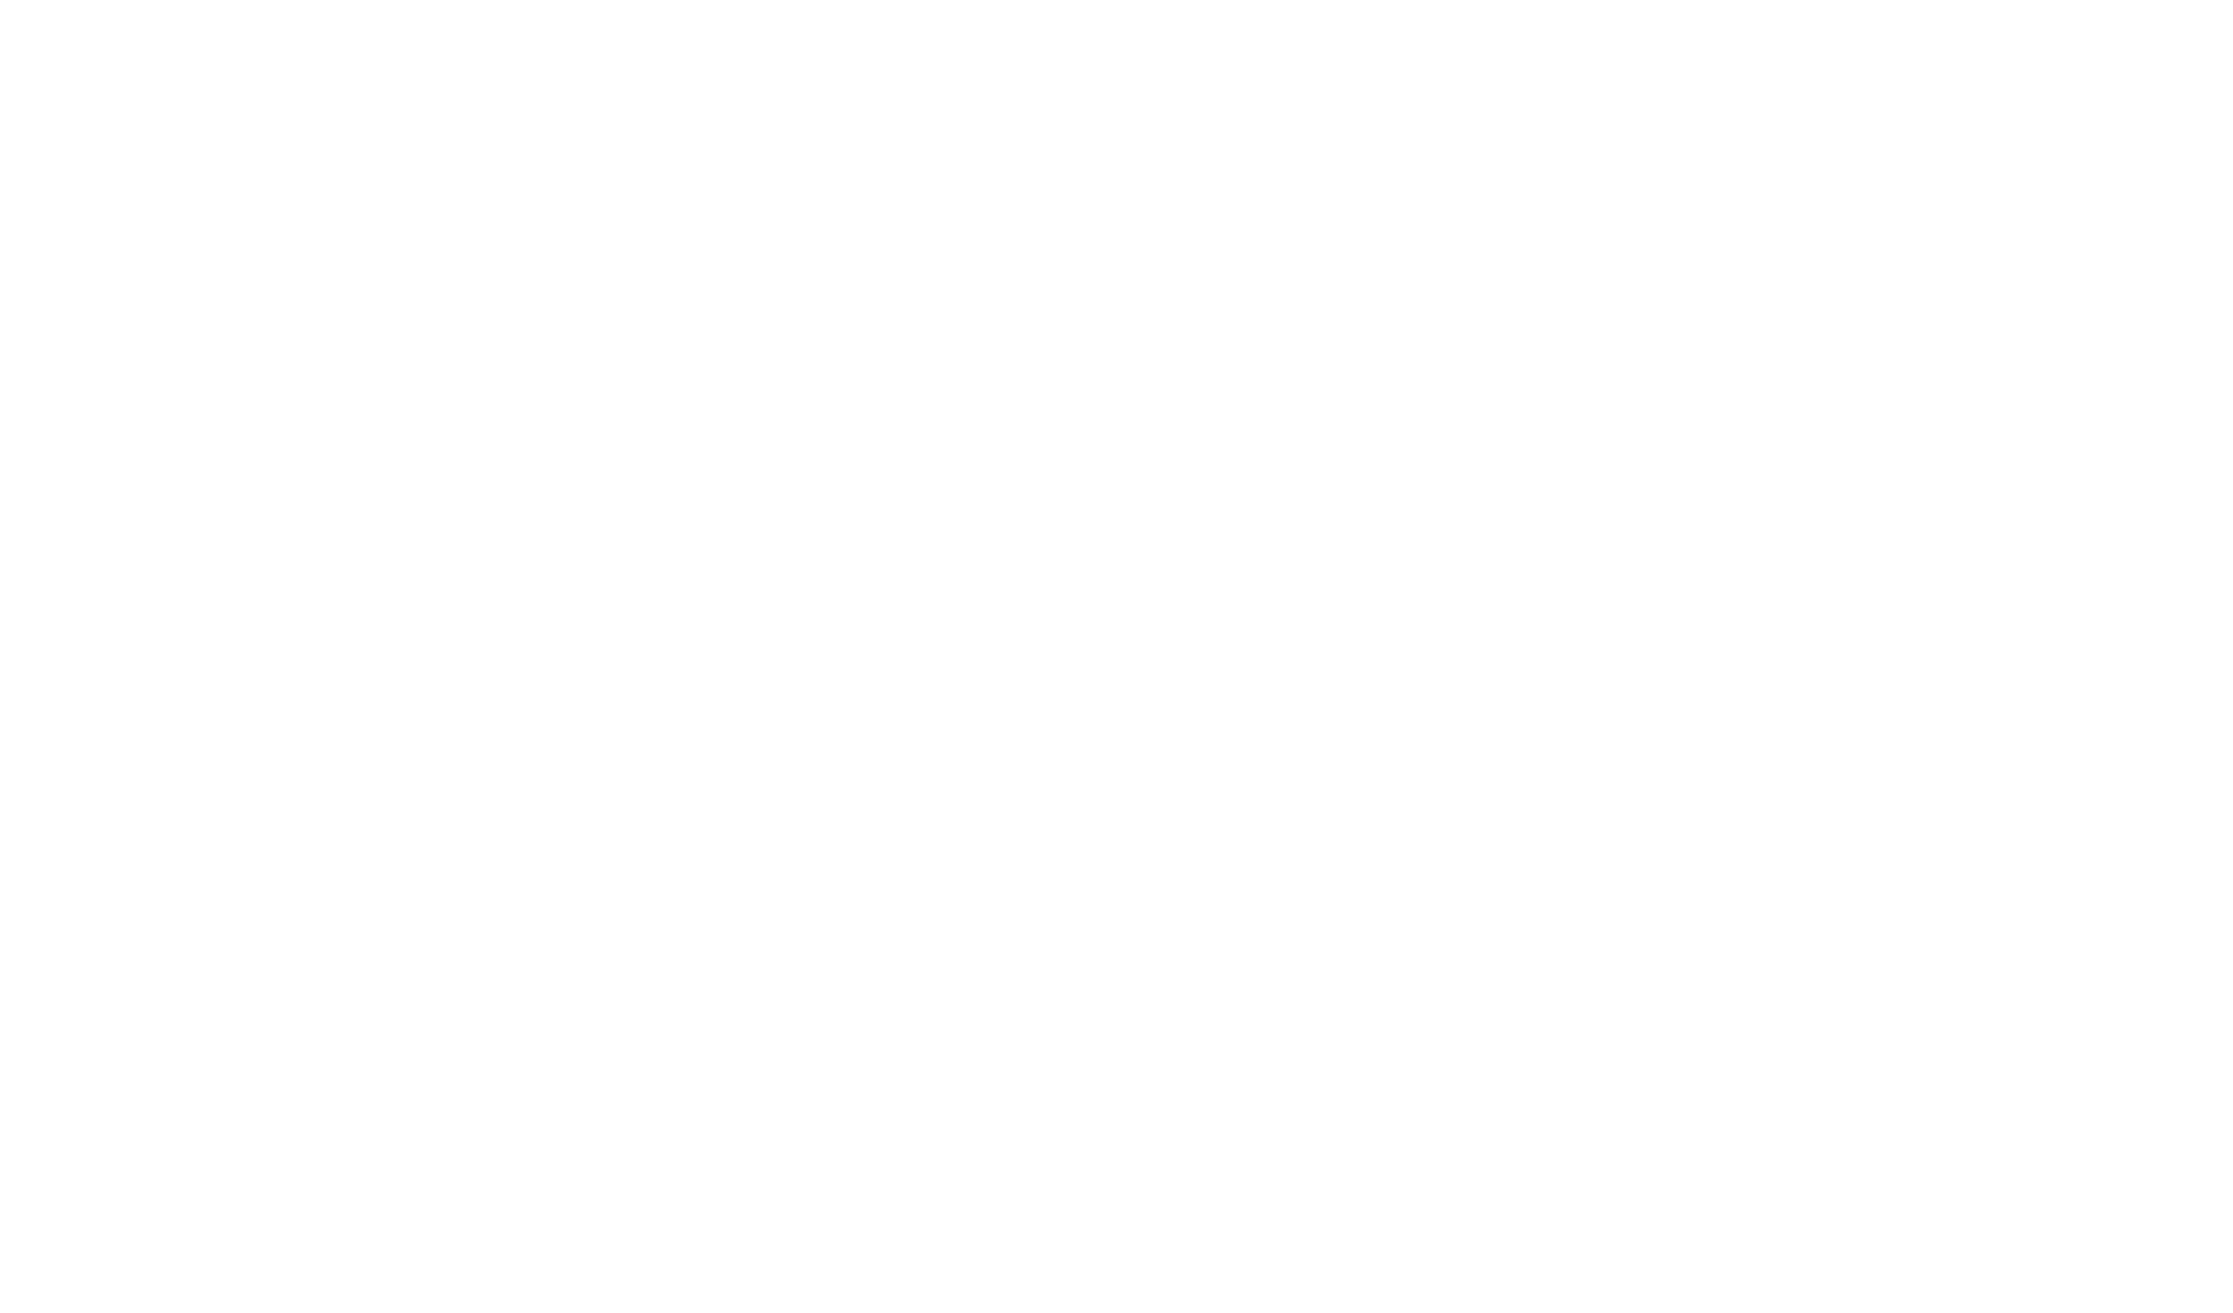 Hotel Indigo Vancouver